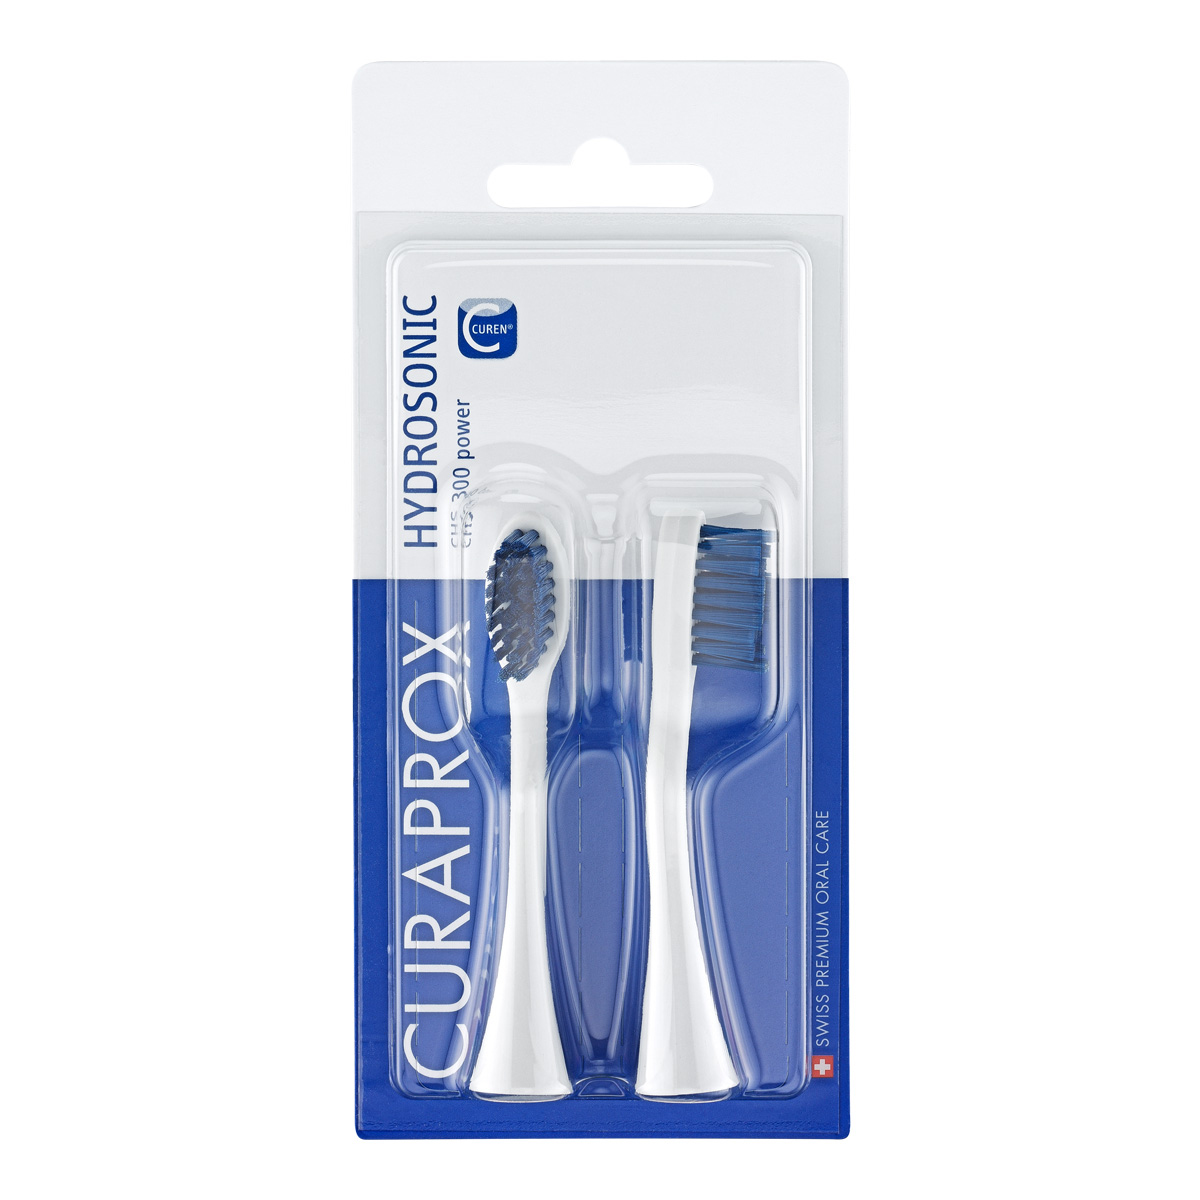 Комплект насадок Curaprox curaprox chs pro power набор насадок для звуковой зубной щетки hydrosonic pro